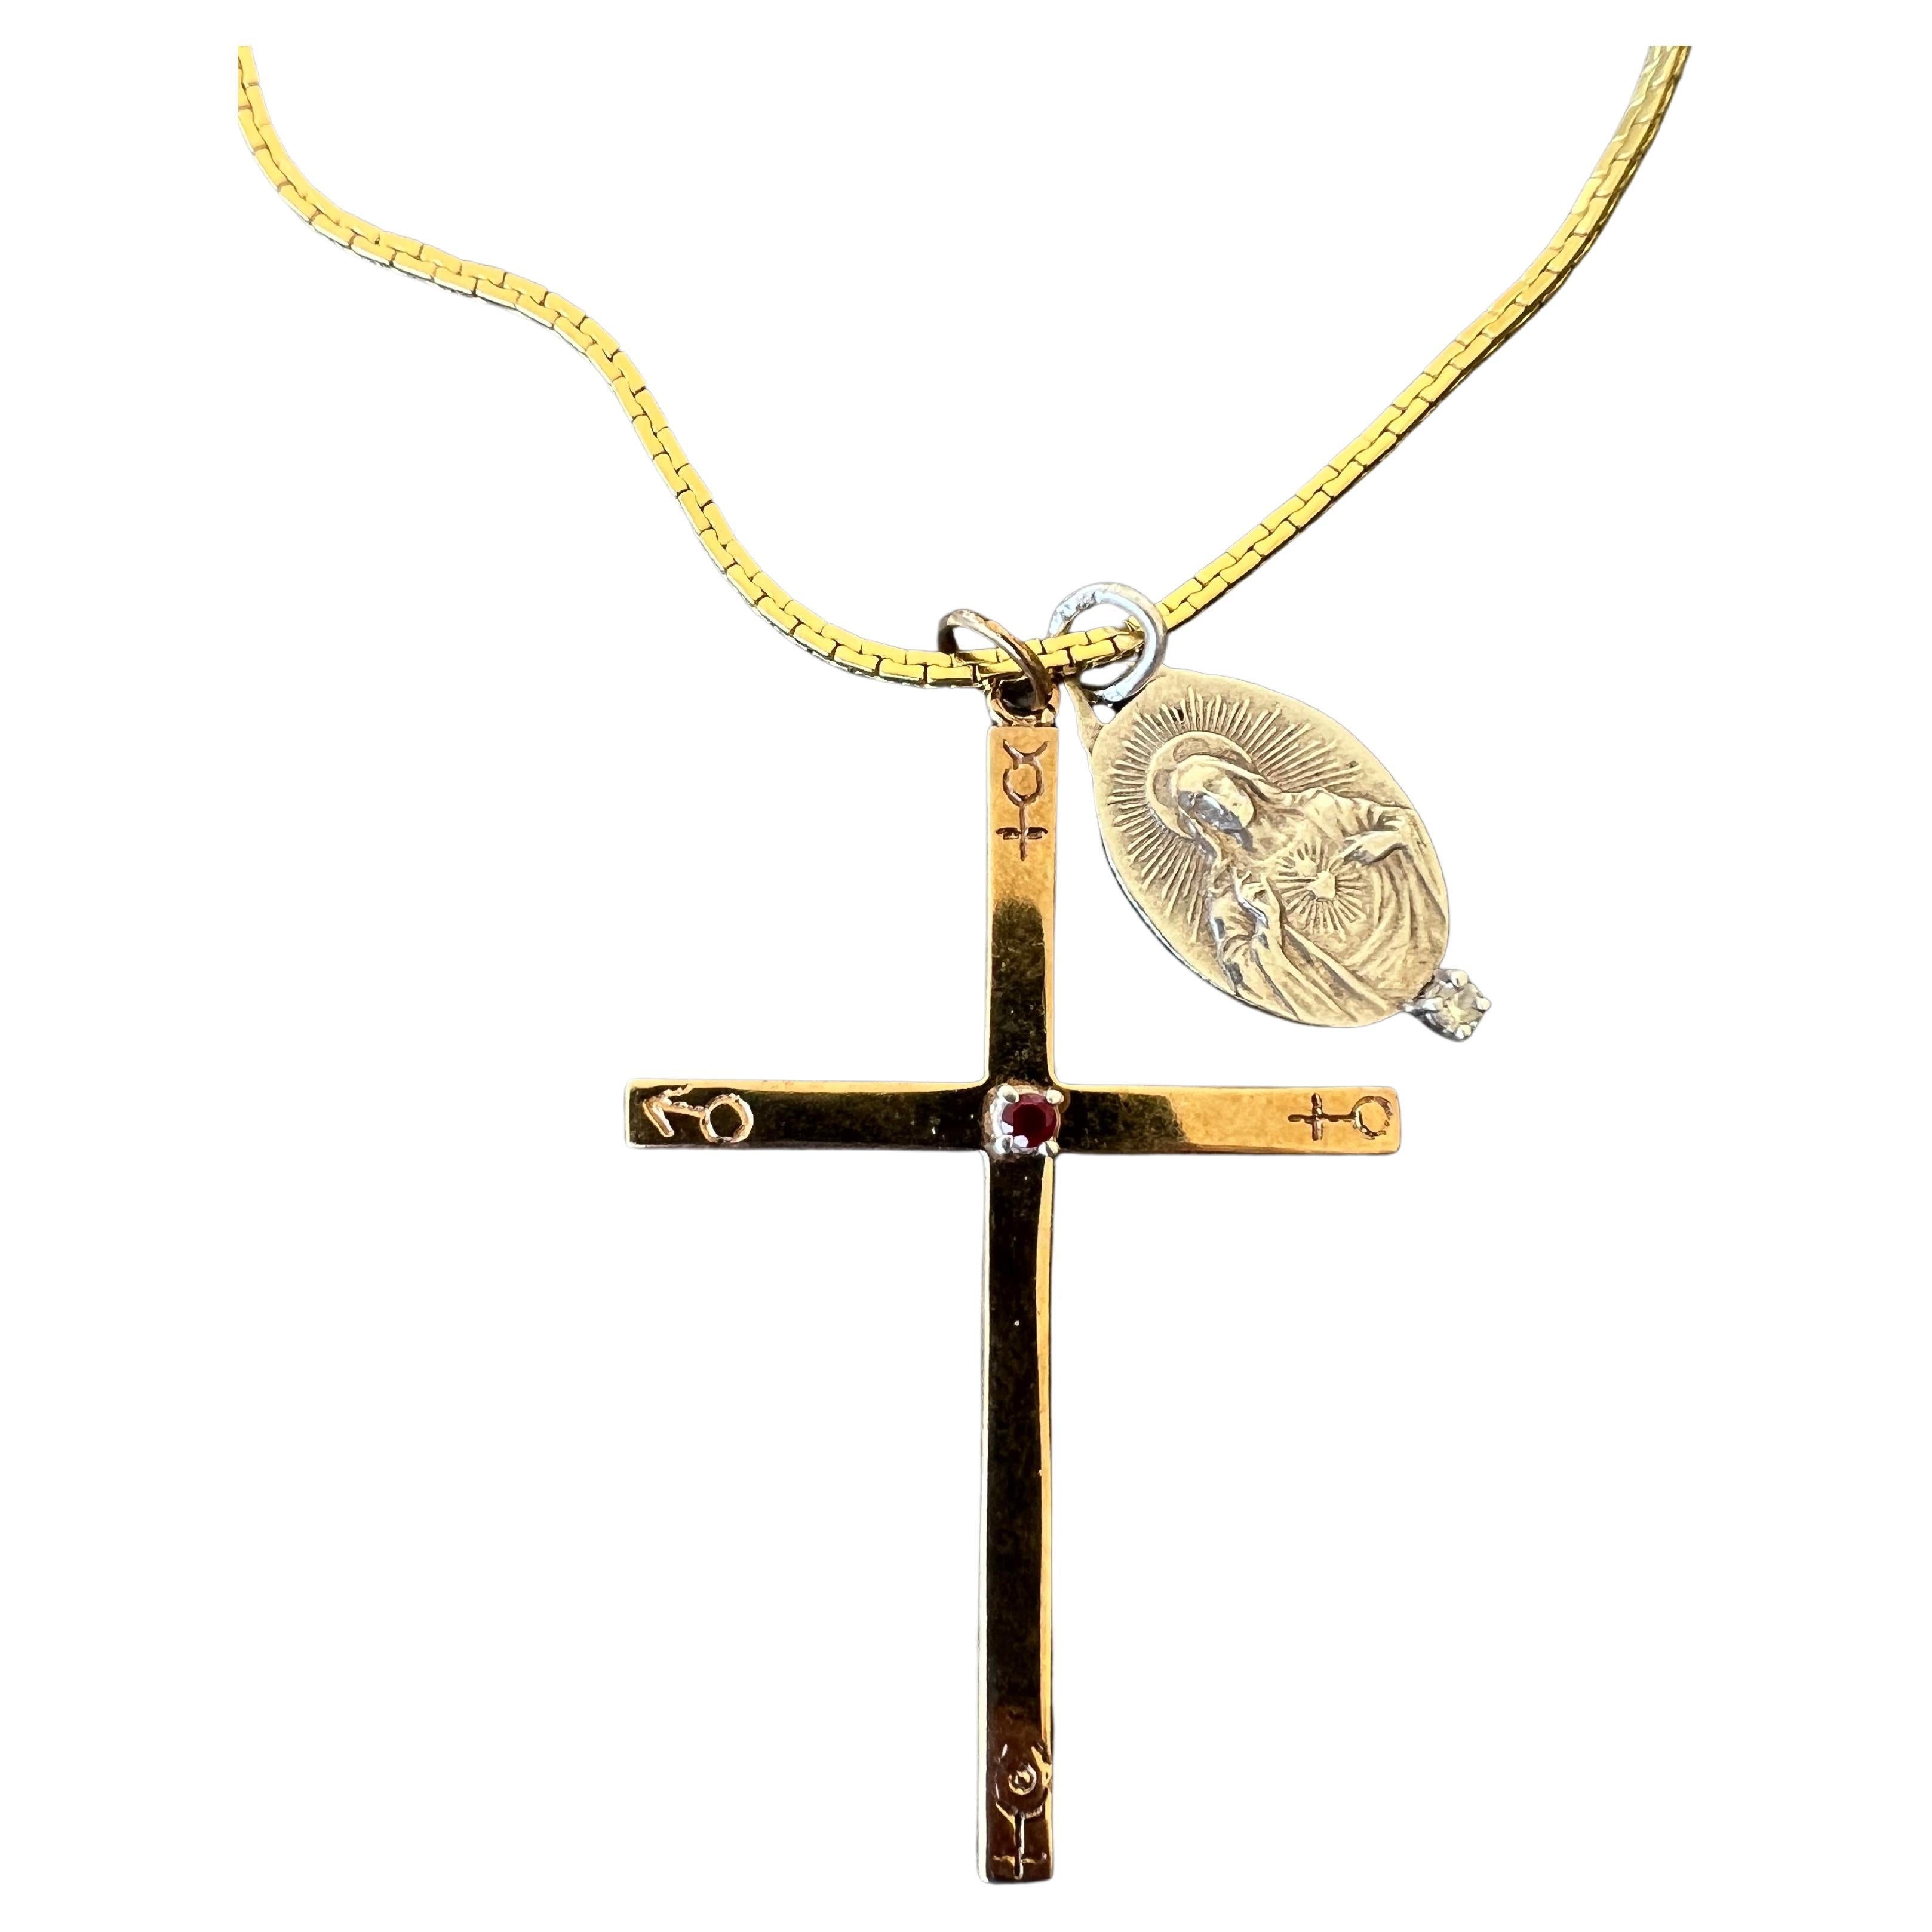 Rubin-Kreuz-Halskette Gravierte Astrologie-Symbole Weißer Diamant Jesus-Medaille

MATERIAL: Das Kreuz ist aus polierter Bronze, die Jesus-Medaille ist aus Sterlingsilber und die Kette selbst ist aus vergoldetem Messing

Ungefähr 28